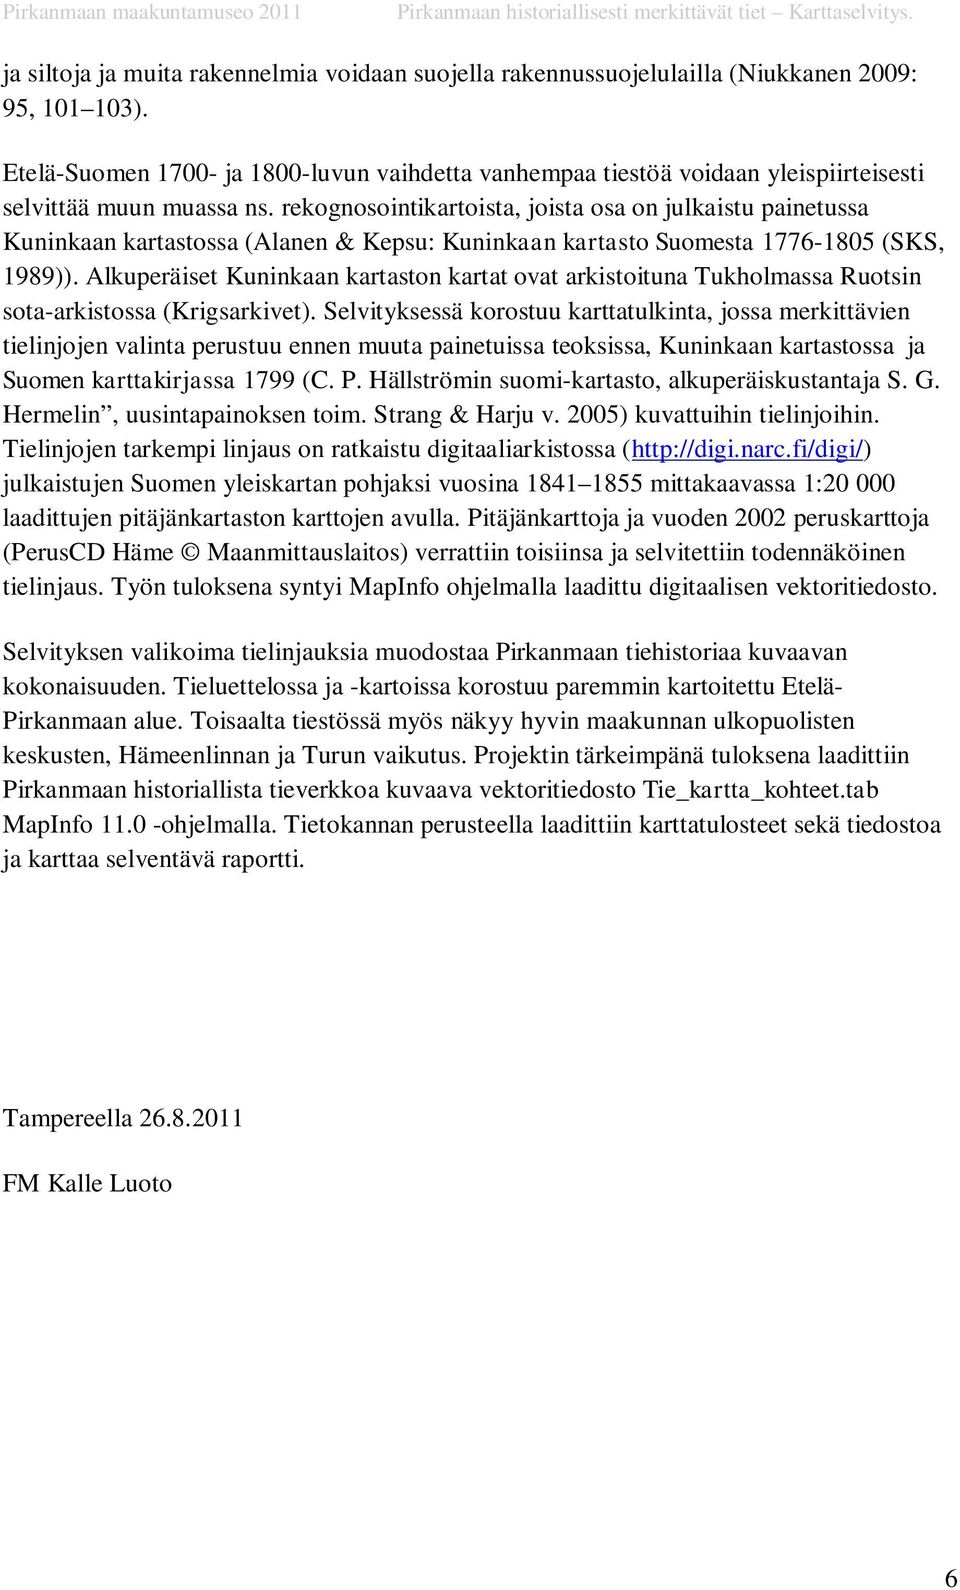 rekognosointikartoista, joista osa on julkaistu painetussa Kuninkaan kartastossa (Alanen & Kepsu: Kuninkaan kartasto Suomesta 1776-1805 (SKS, 1989)).